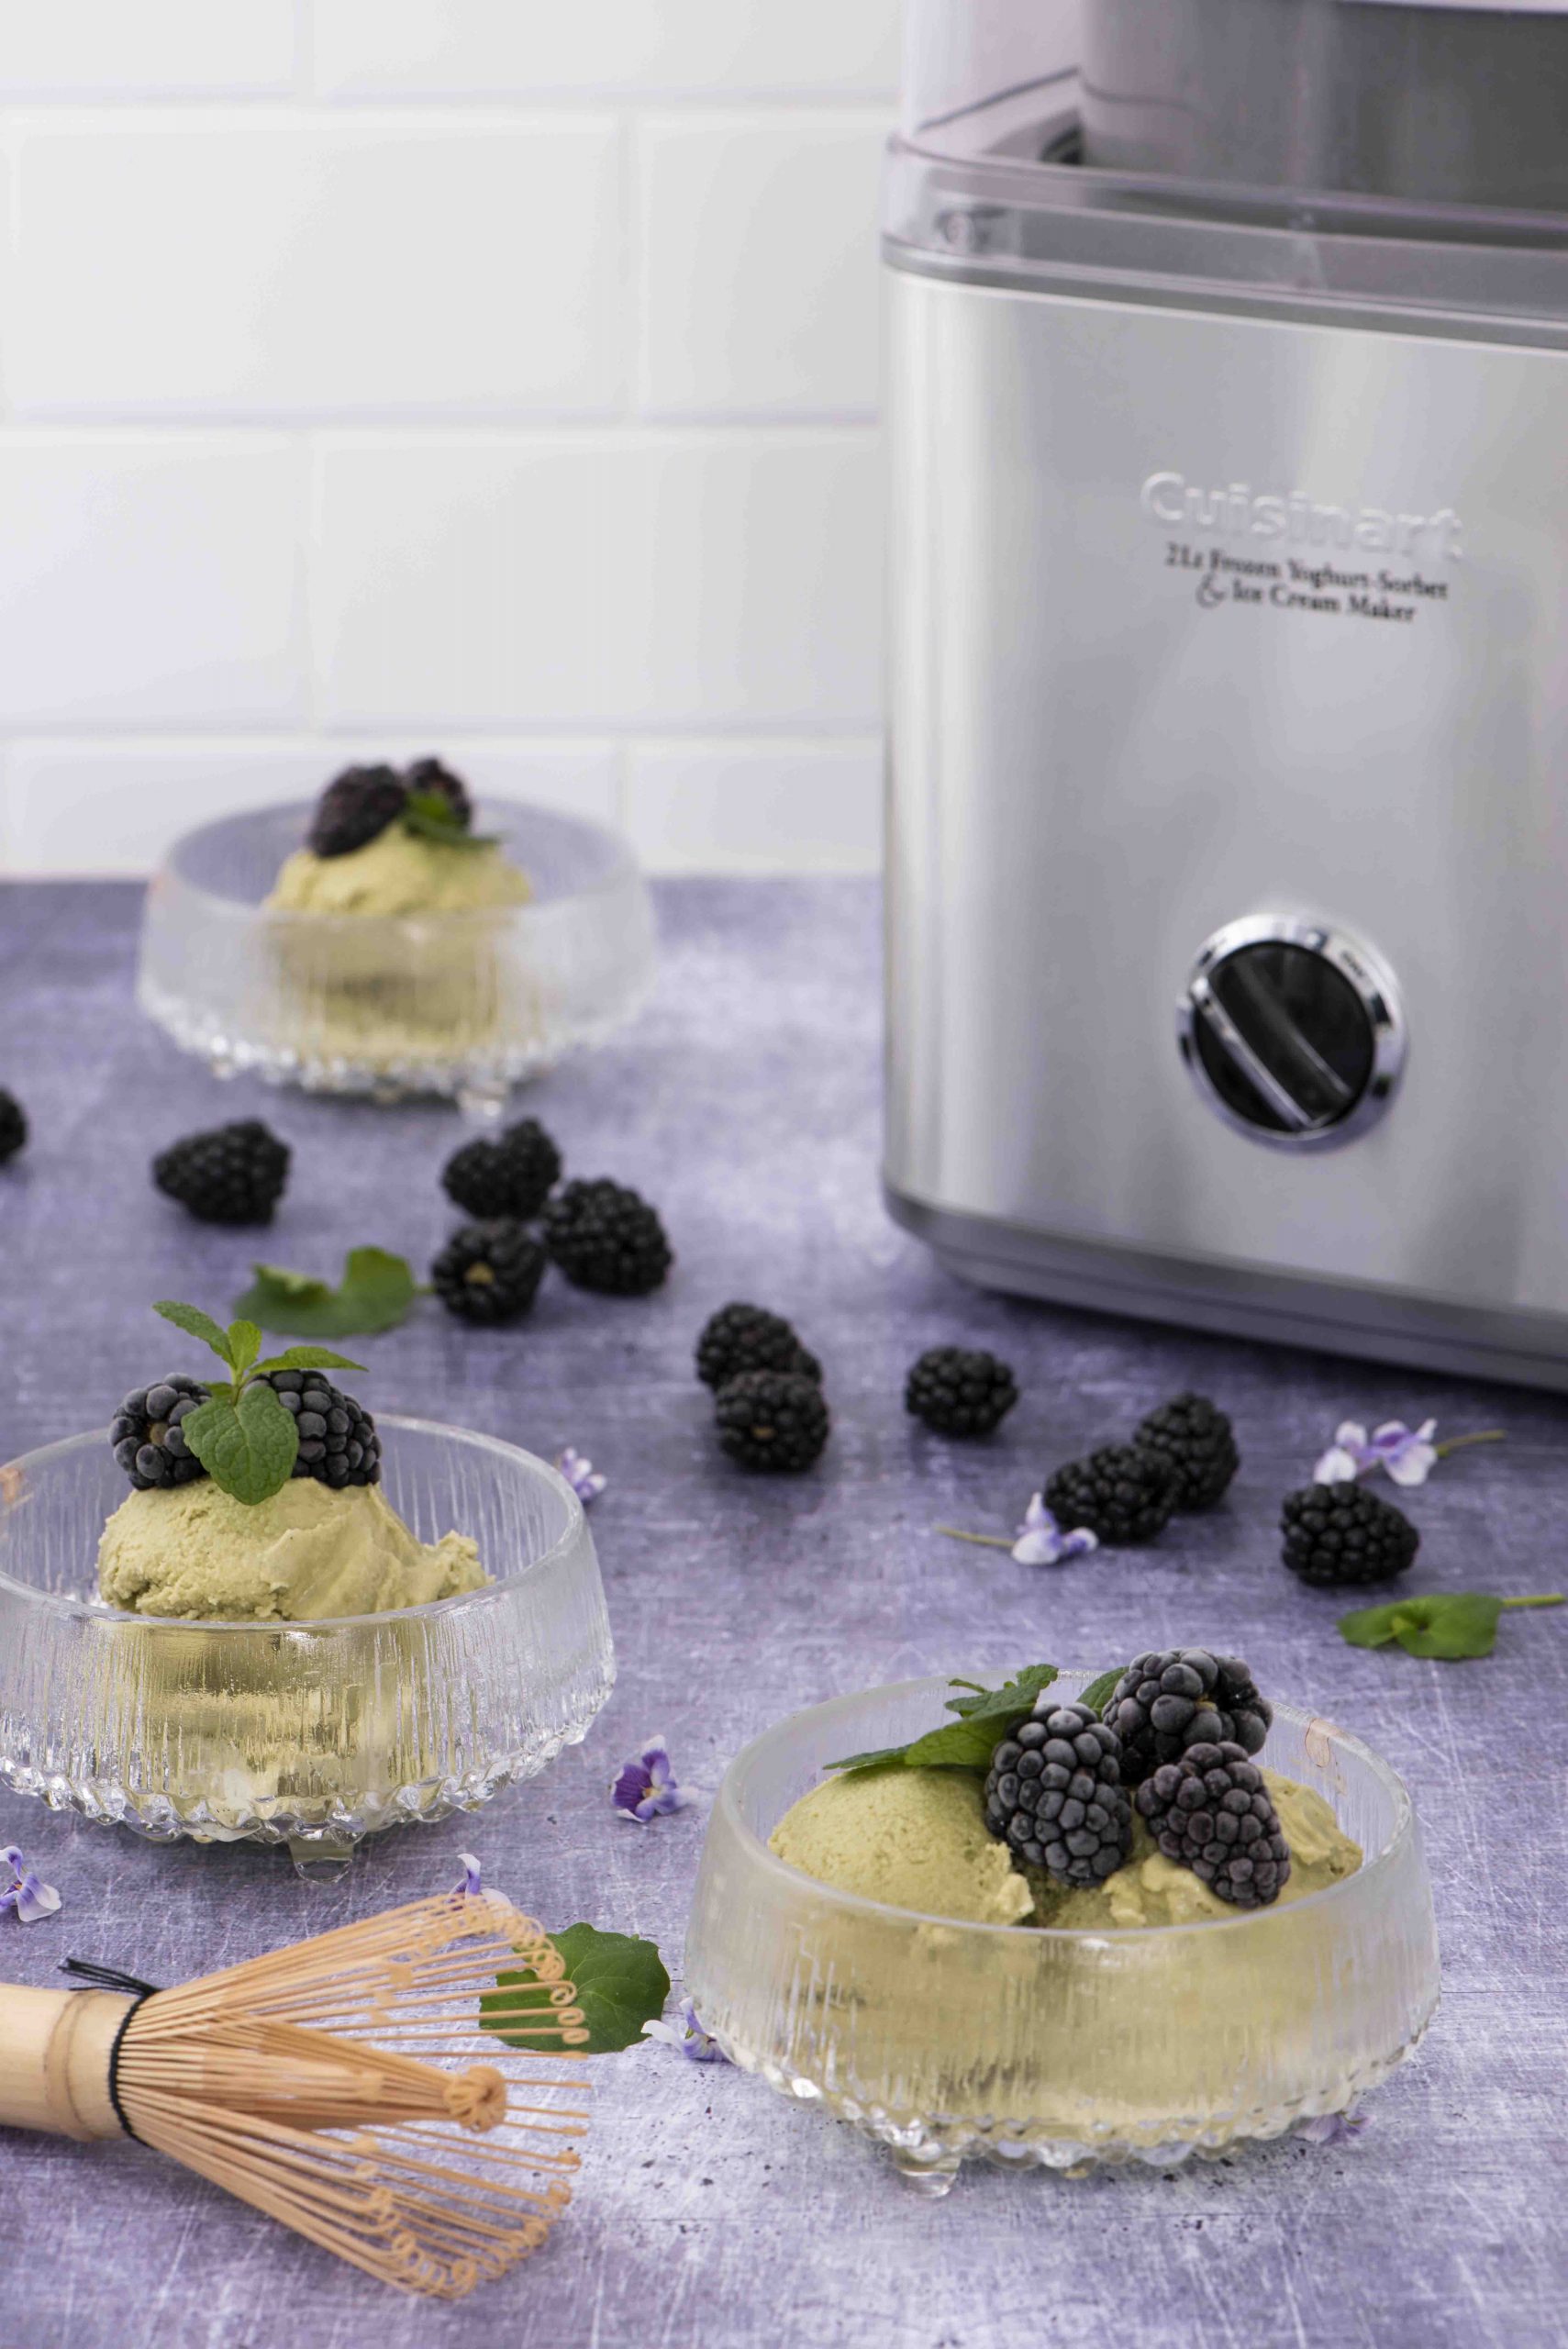 Cuisinart Cool Scoops Plus Frozen Dessert Maker 2L Product Image 1